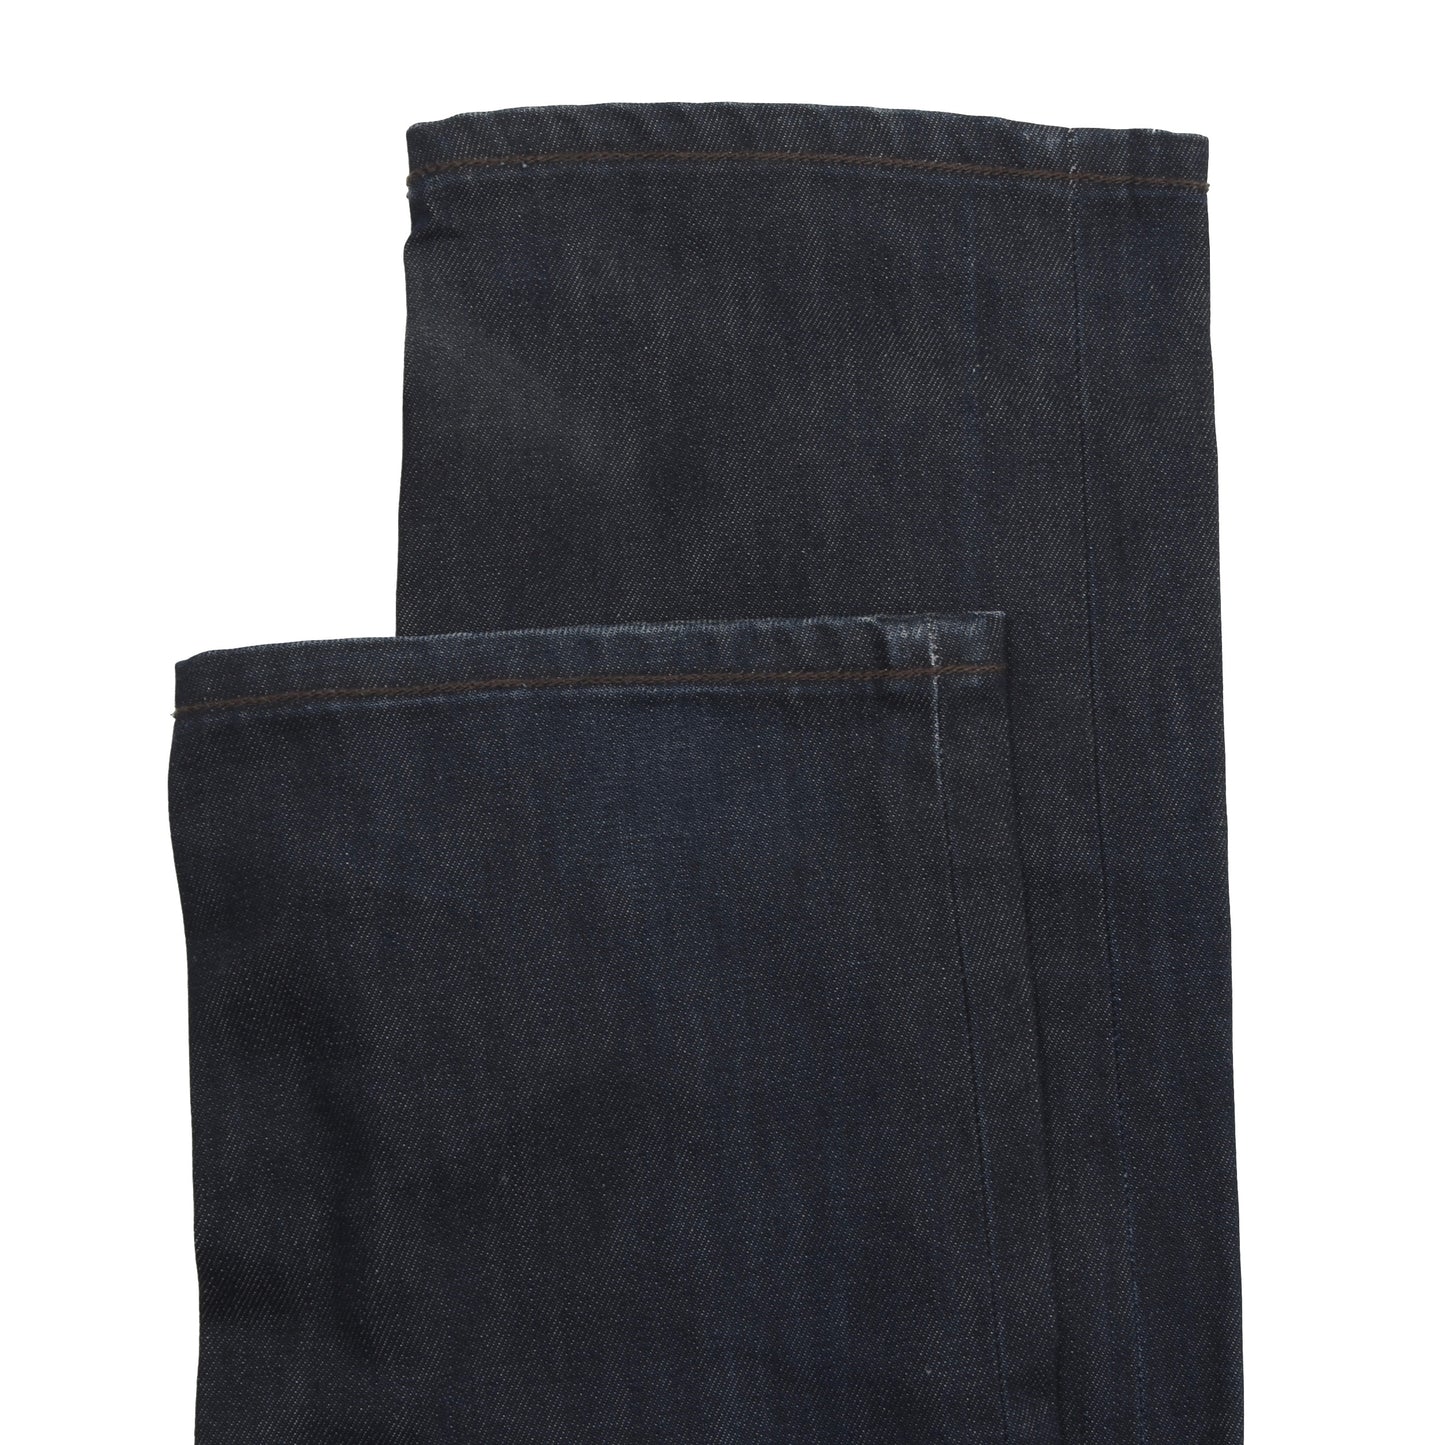 Jacob Cohën Jeans Type J688 Size 32 - Blue